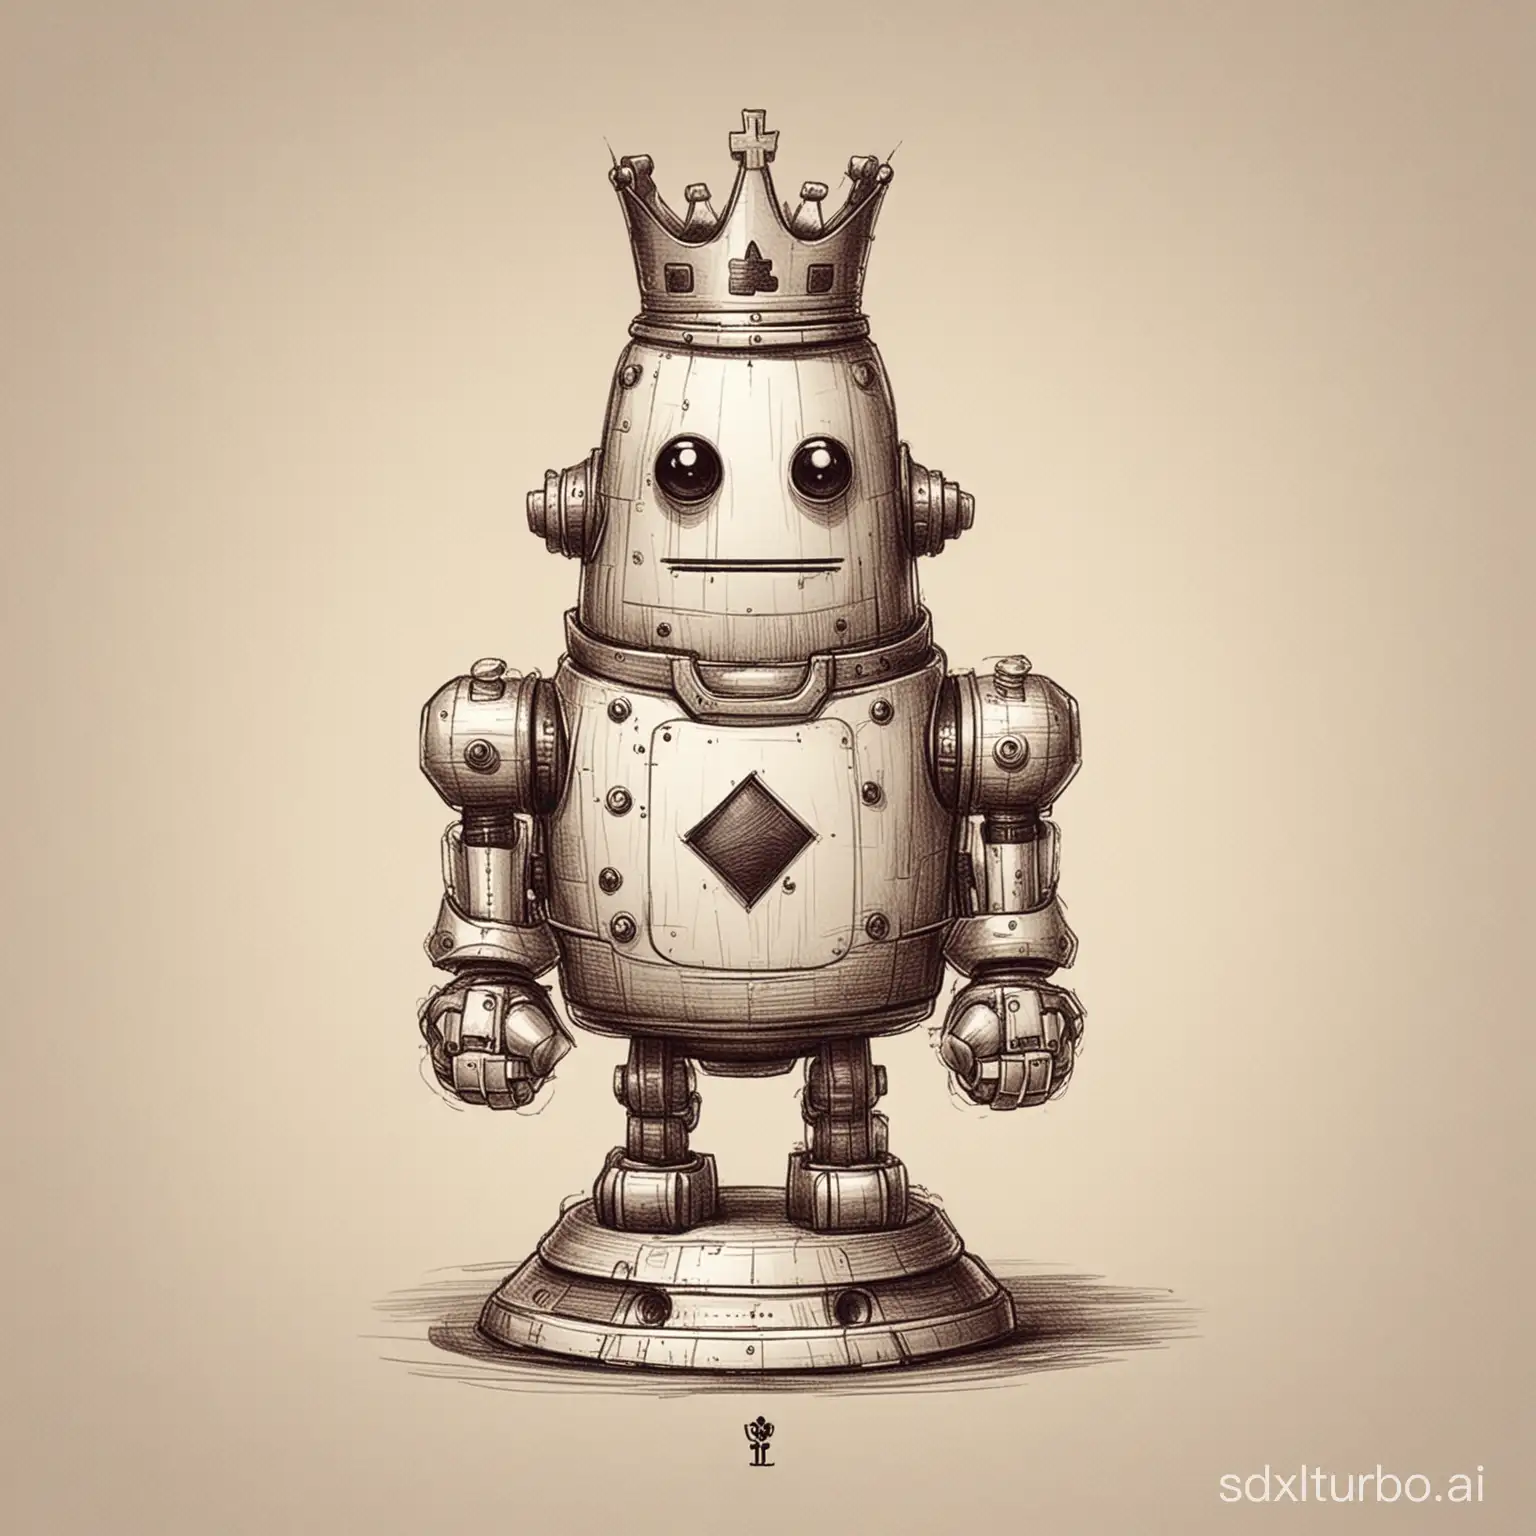 画一个国际象棋机器人，角色是国王，底部圆形，具有国际象棋和机器人双重特征，造型可爱一些